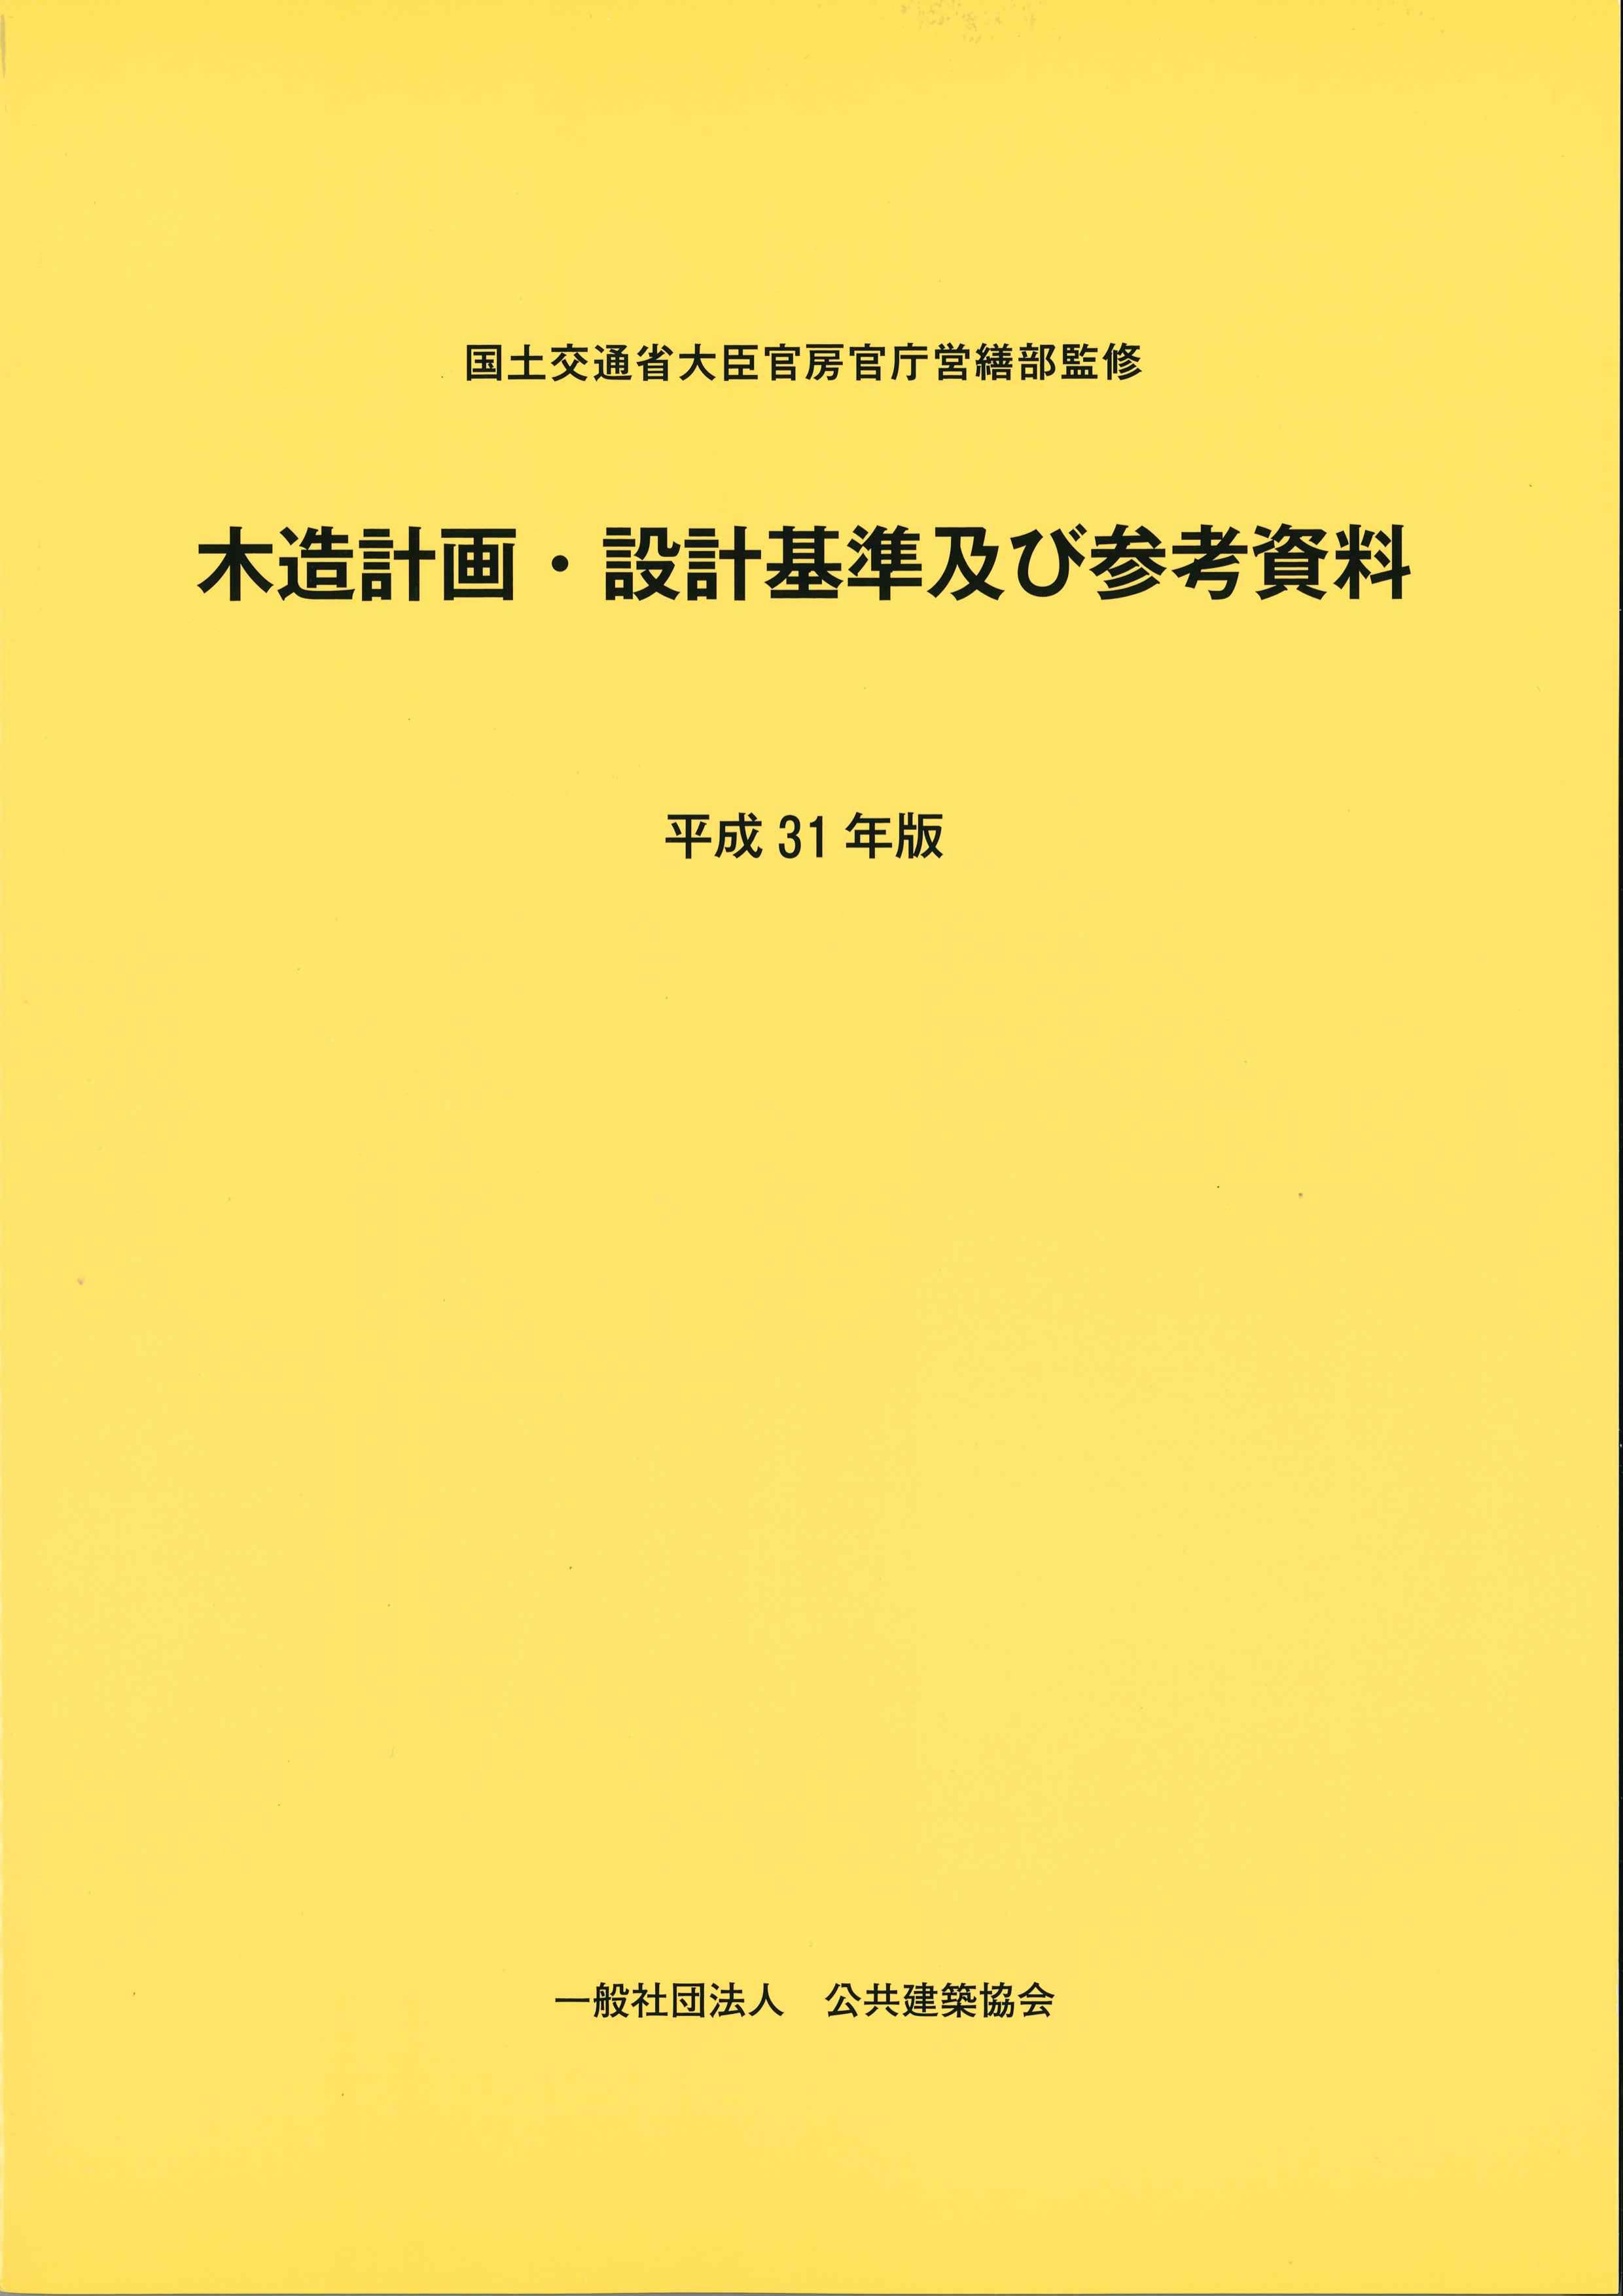 木造計画・設計基準及び参考資料 平成31年版 | 株式会社かんぽう